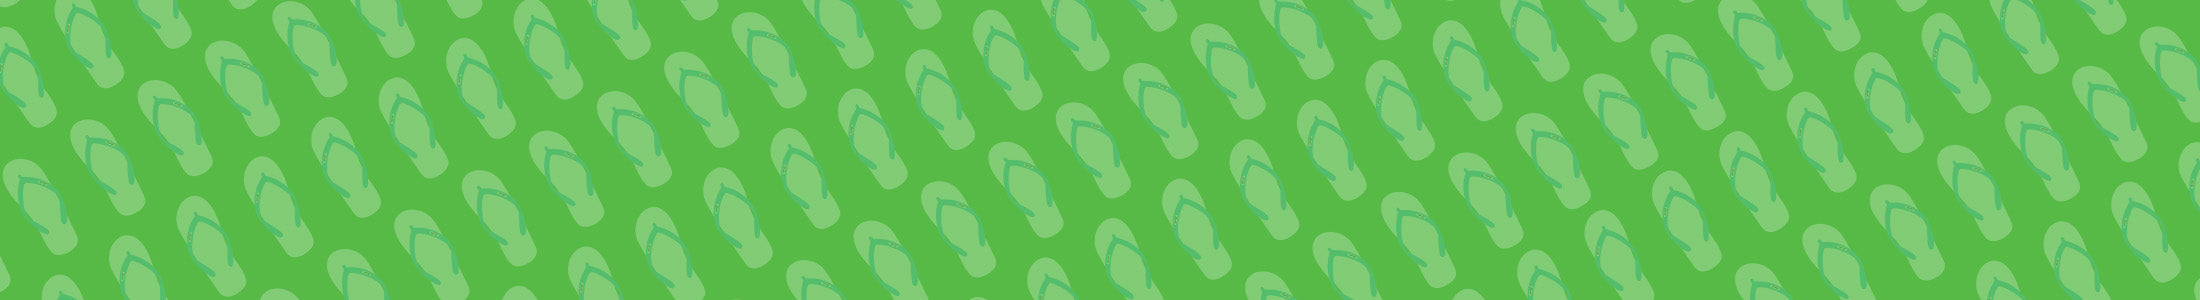 bg green slippers